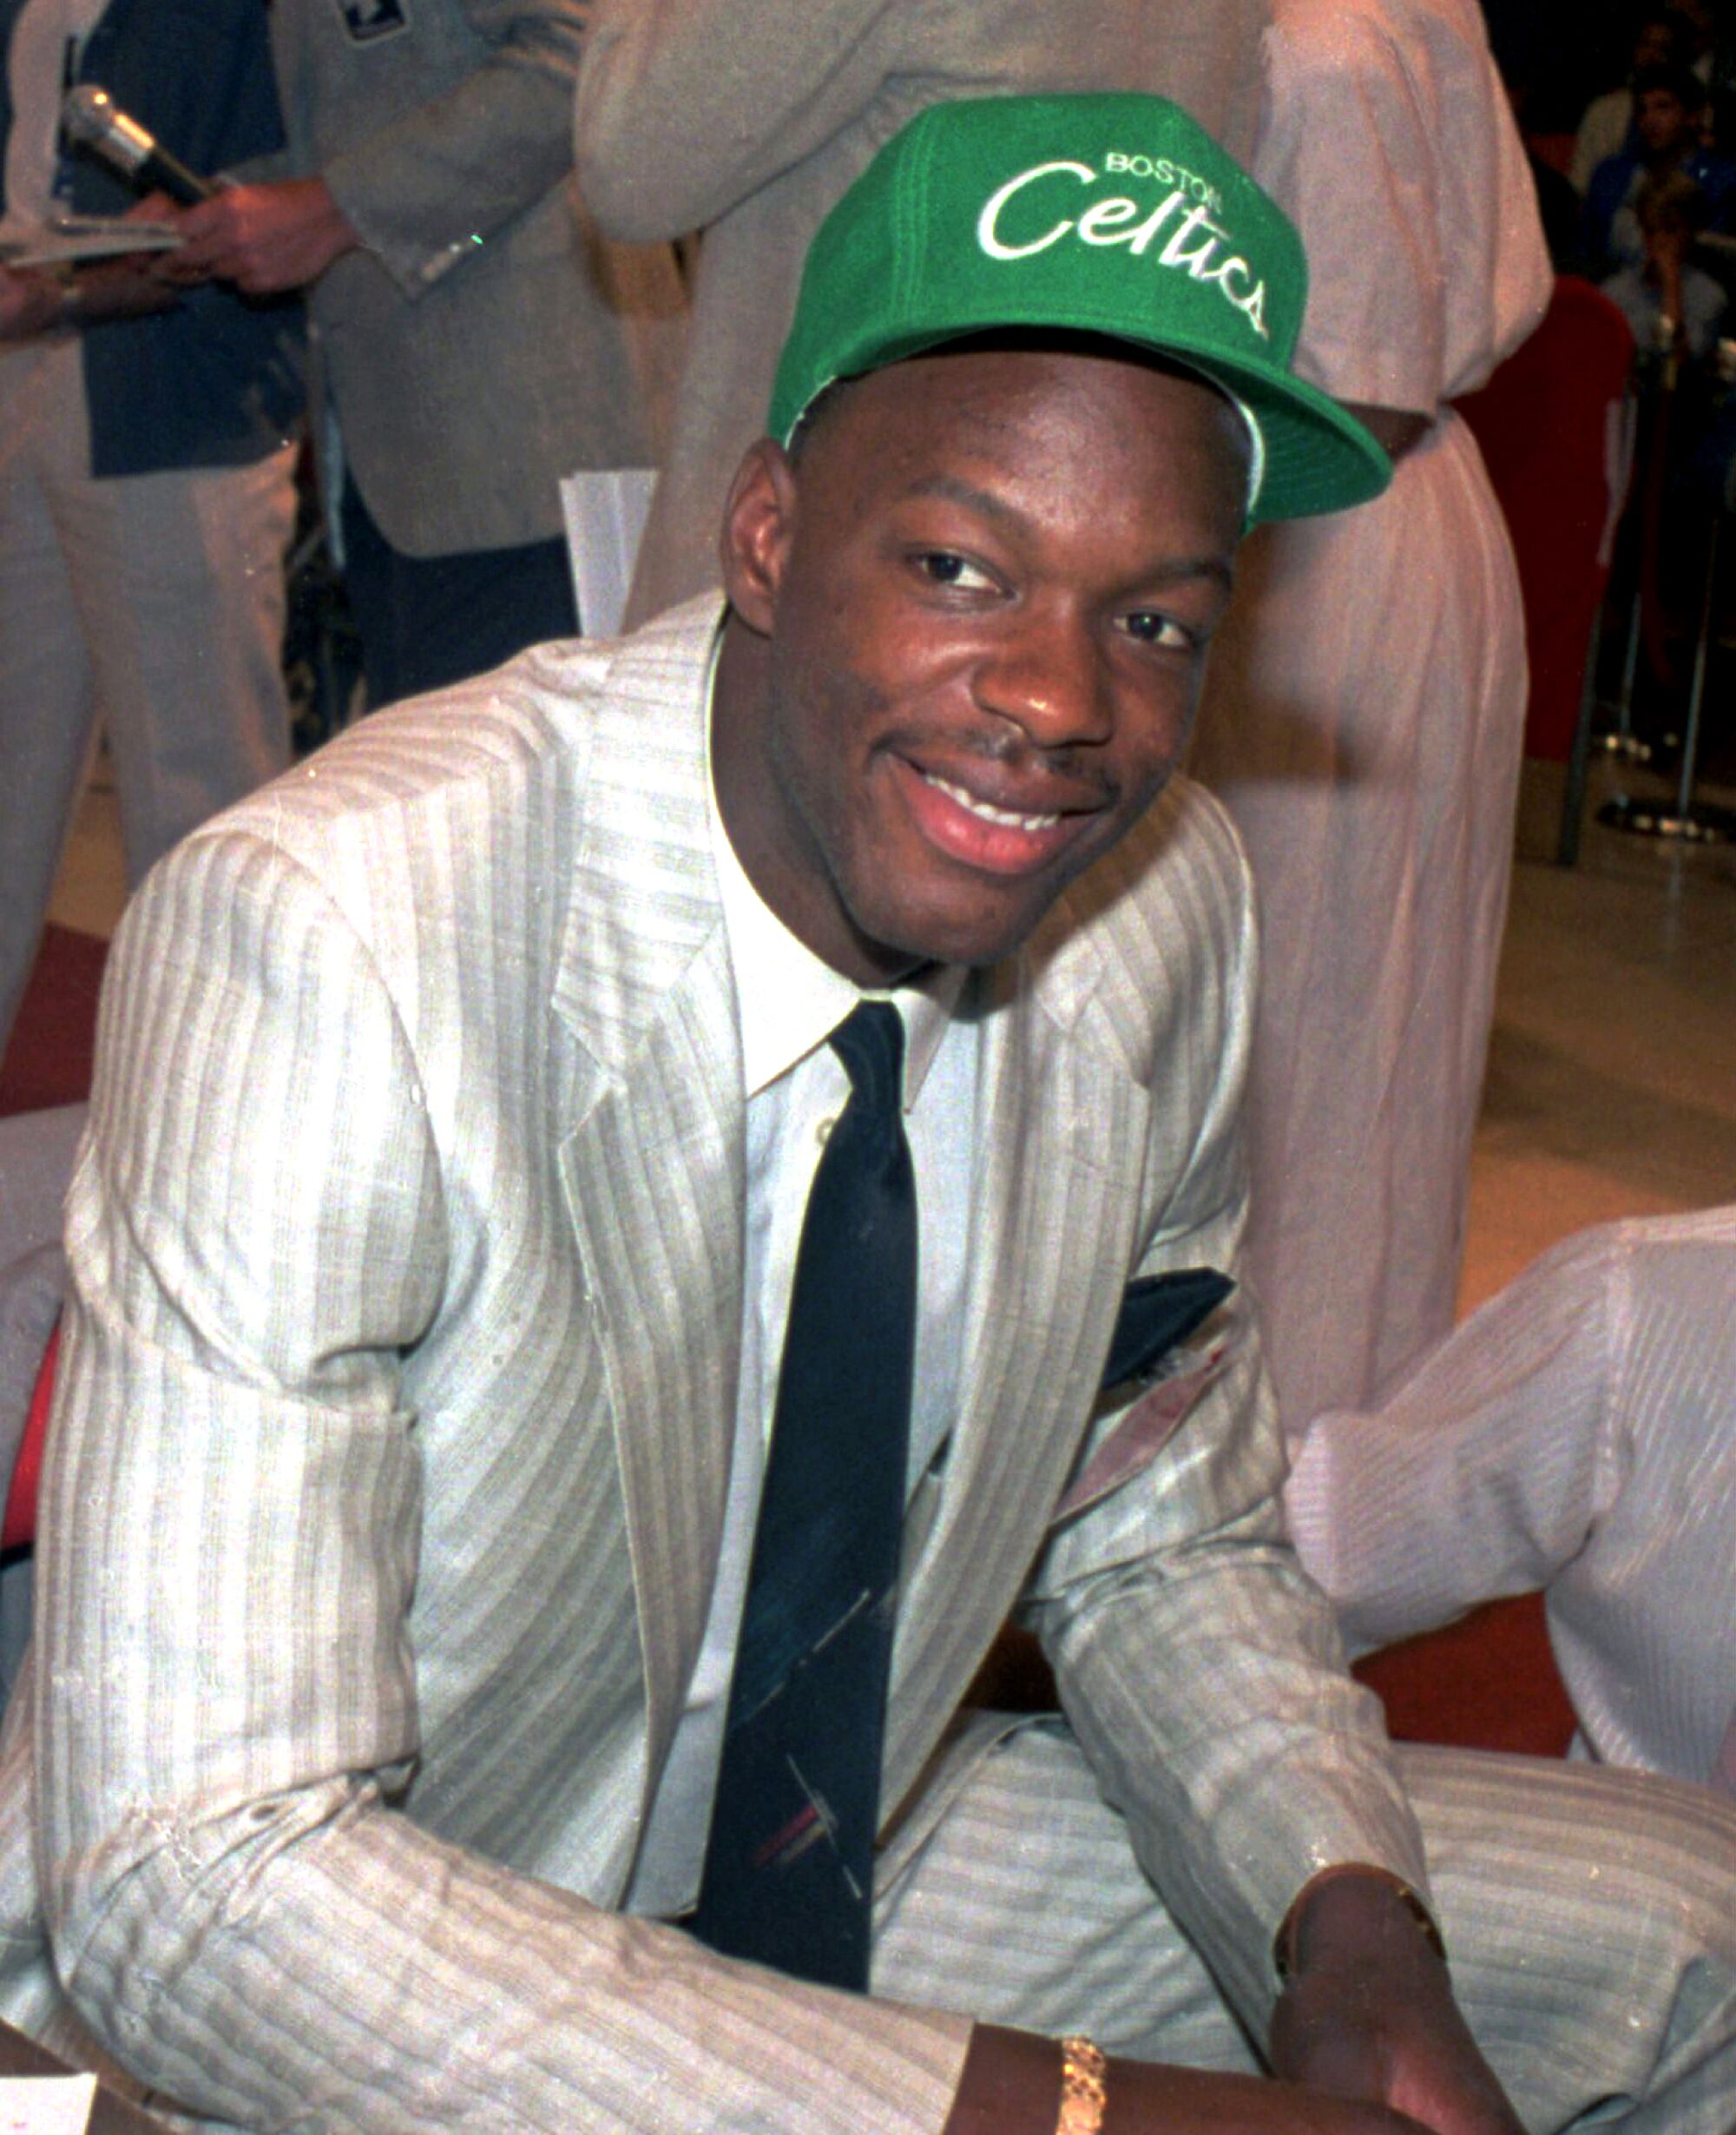 A man in a suit wears a Boston Celtics cap 